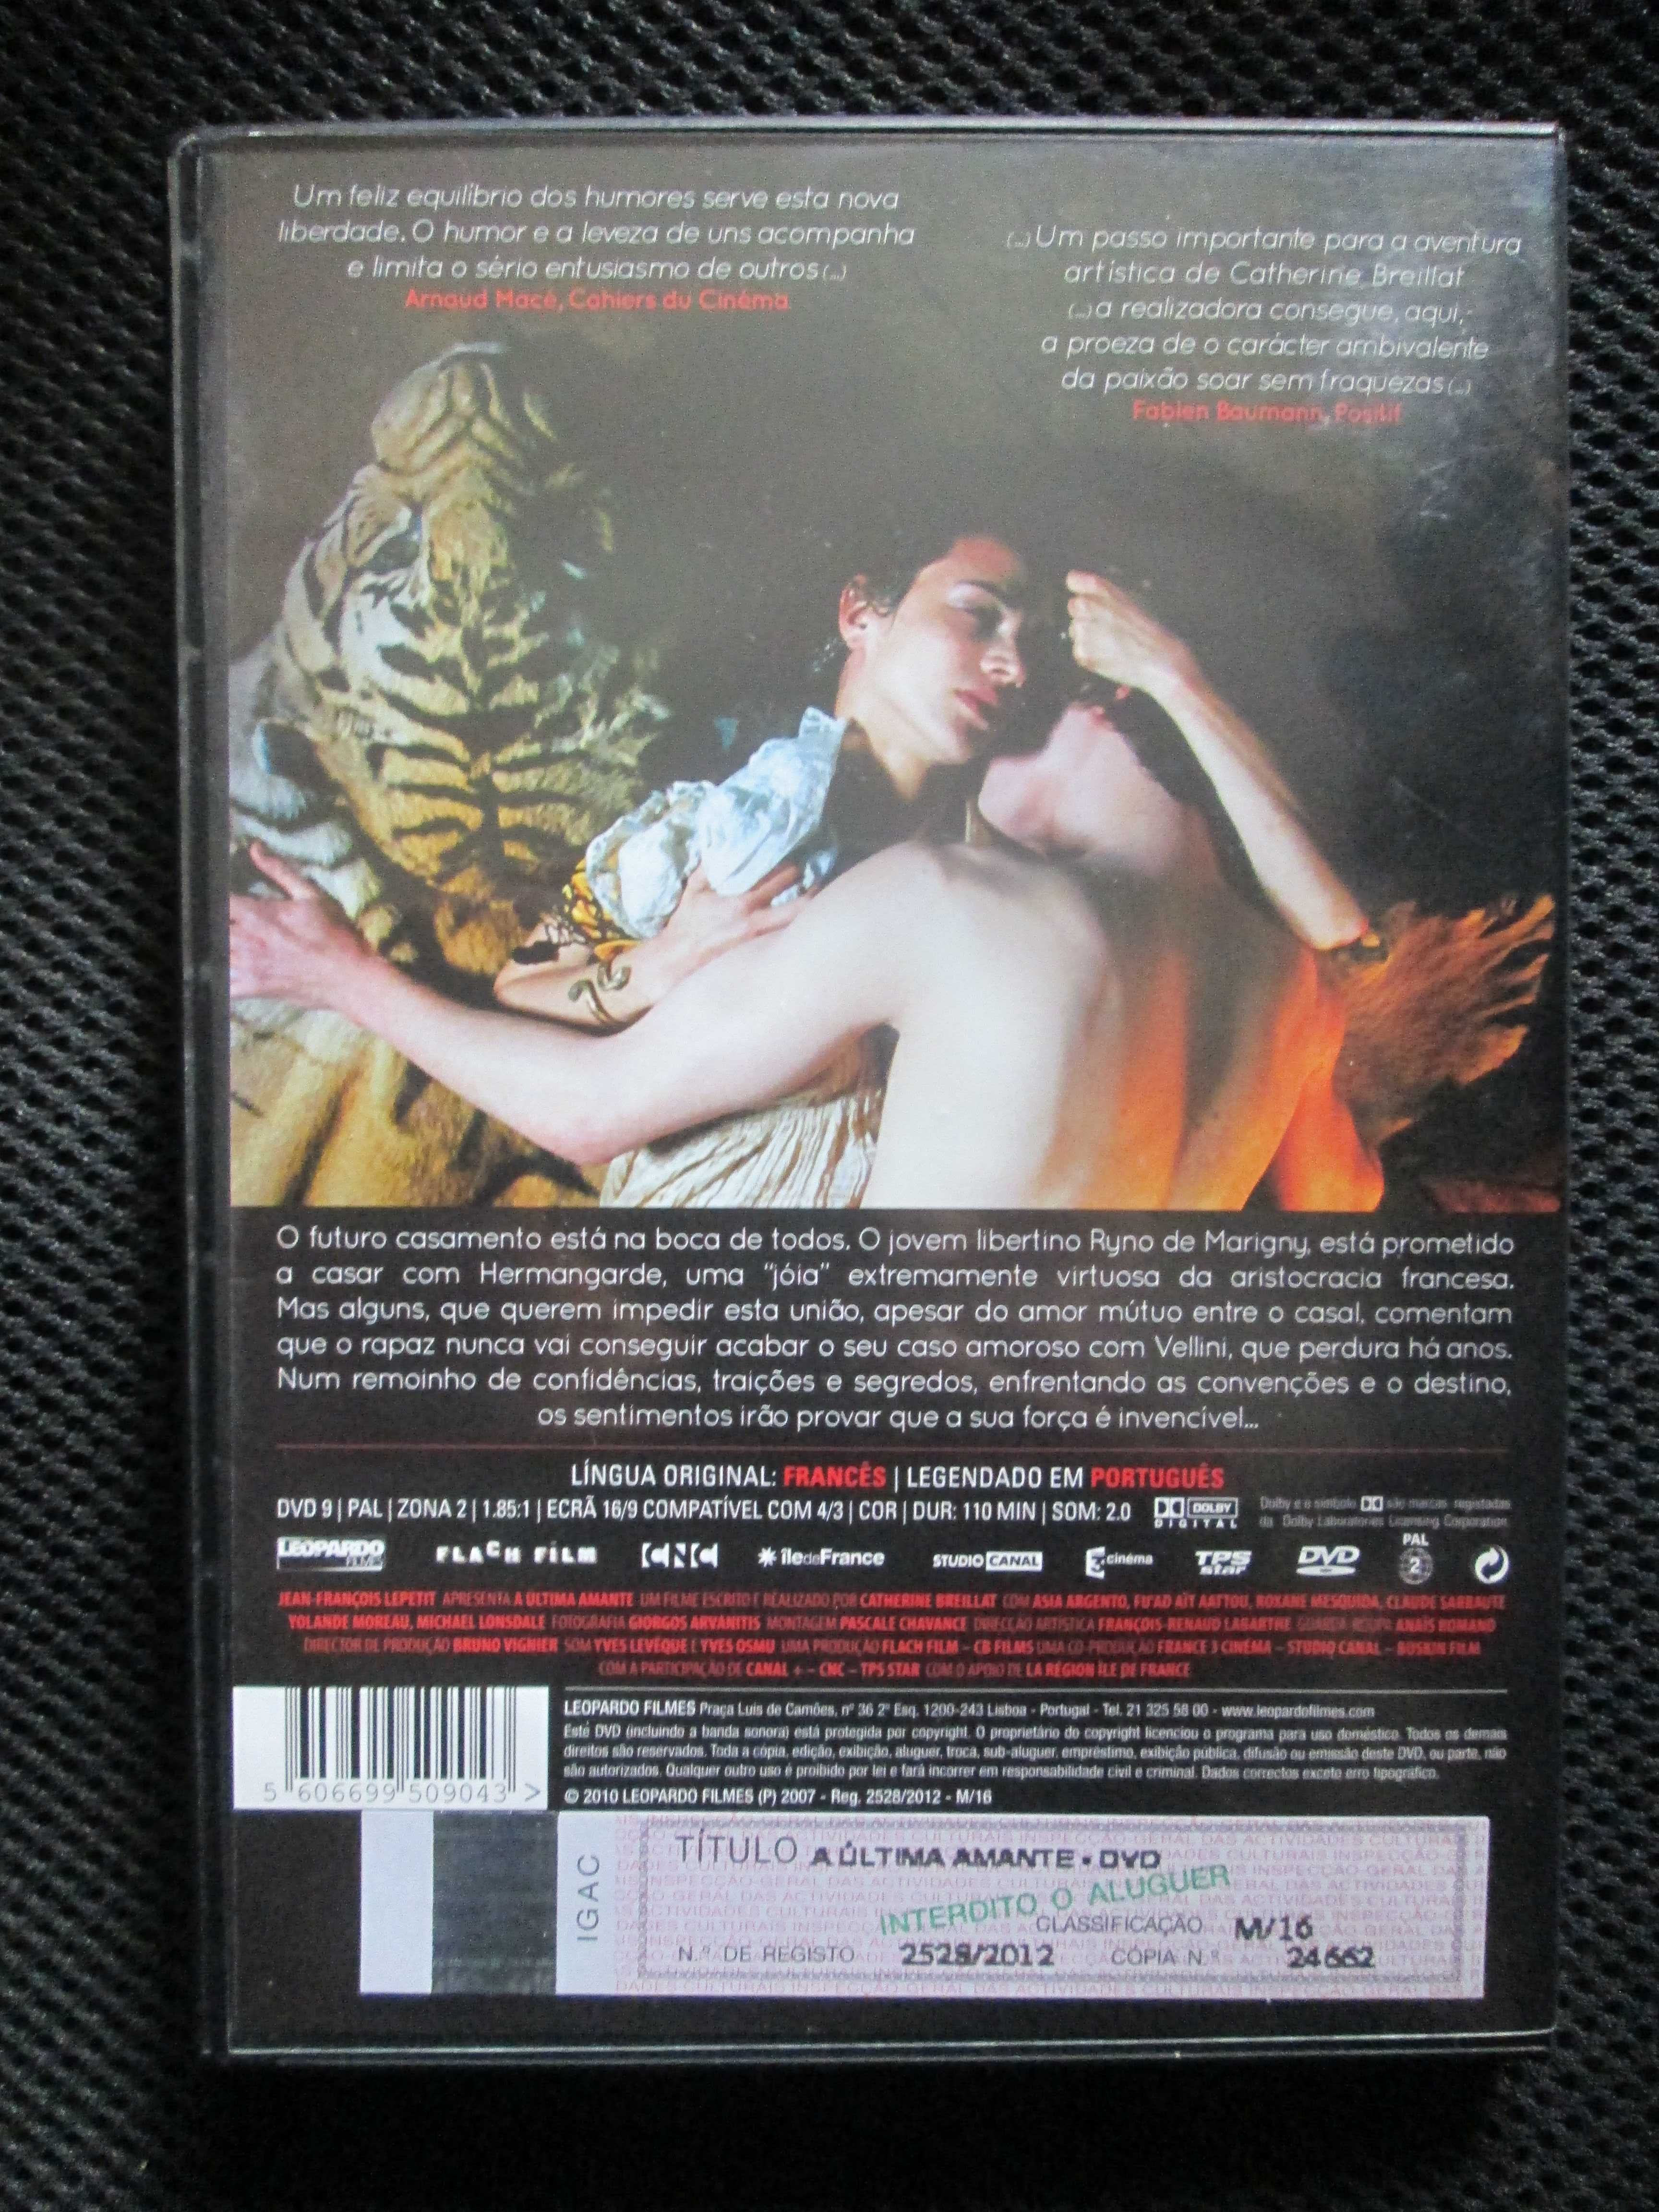 DVD - A Última Amante, com Asia Argento, Claude Sarraute
Realização